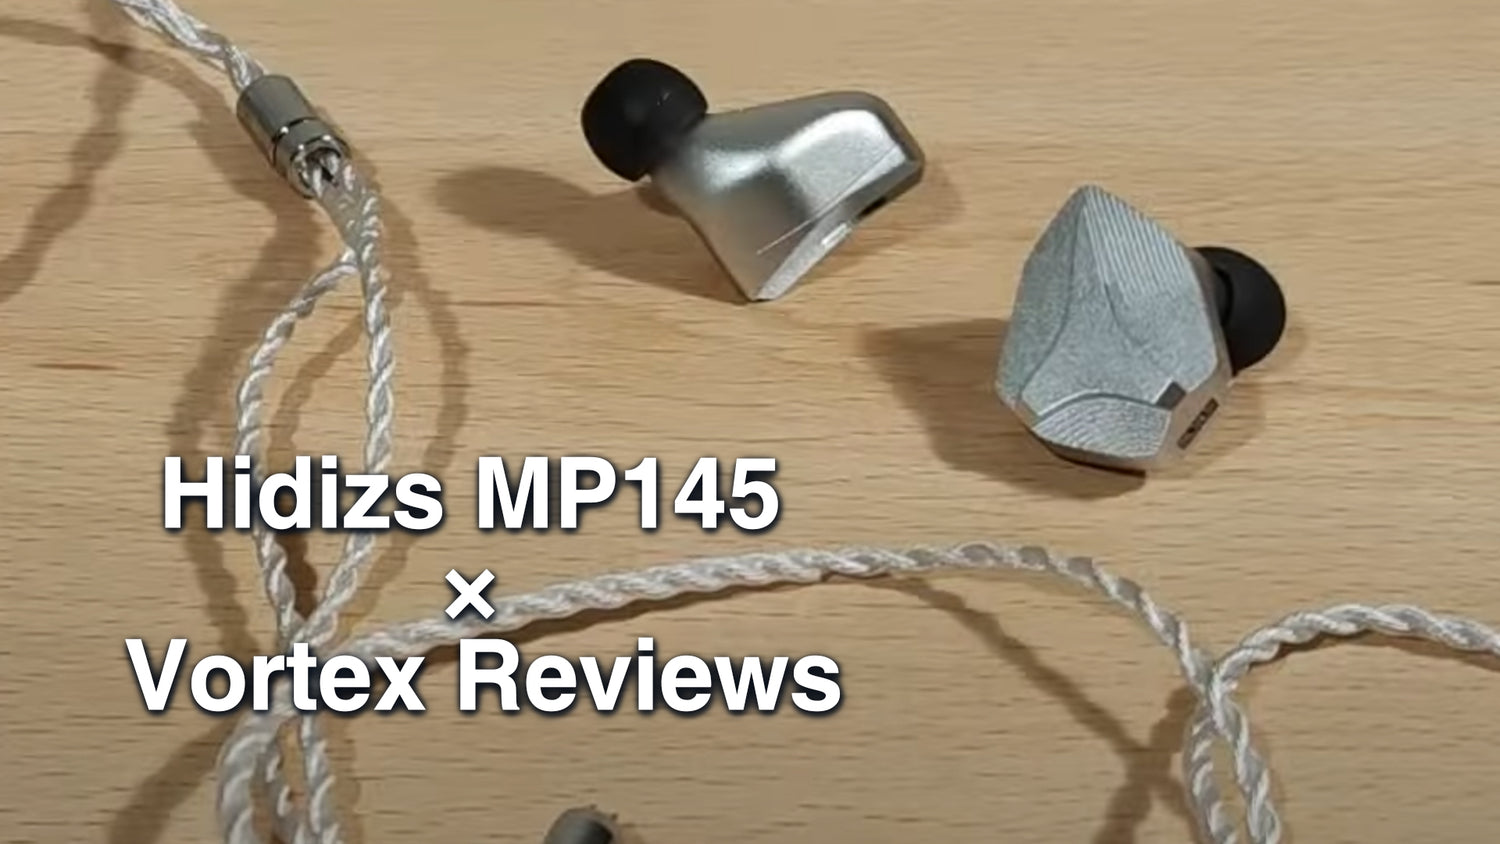 Hidizs MP145 Review - Vortex Reviews